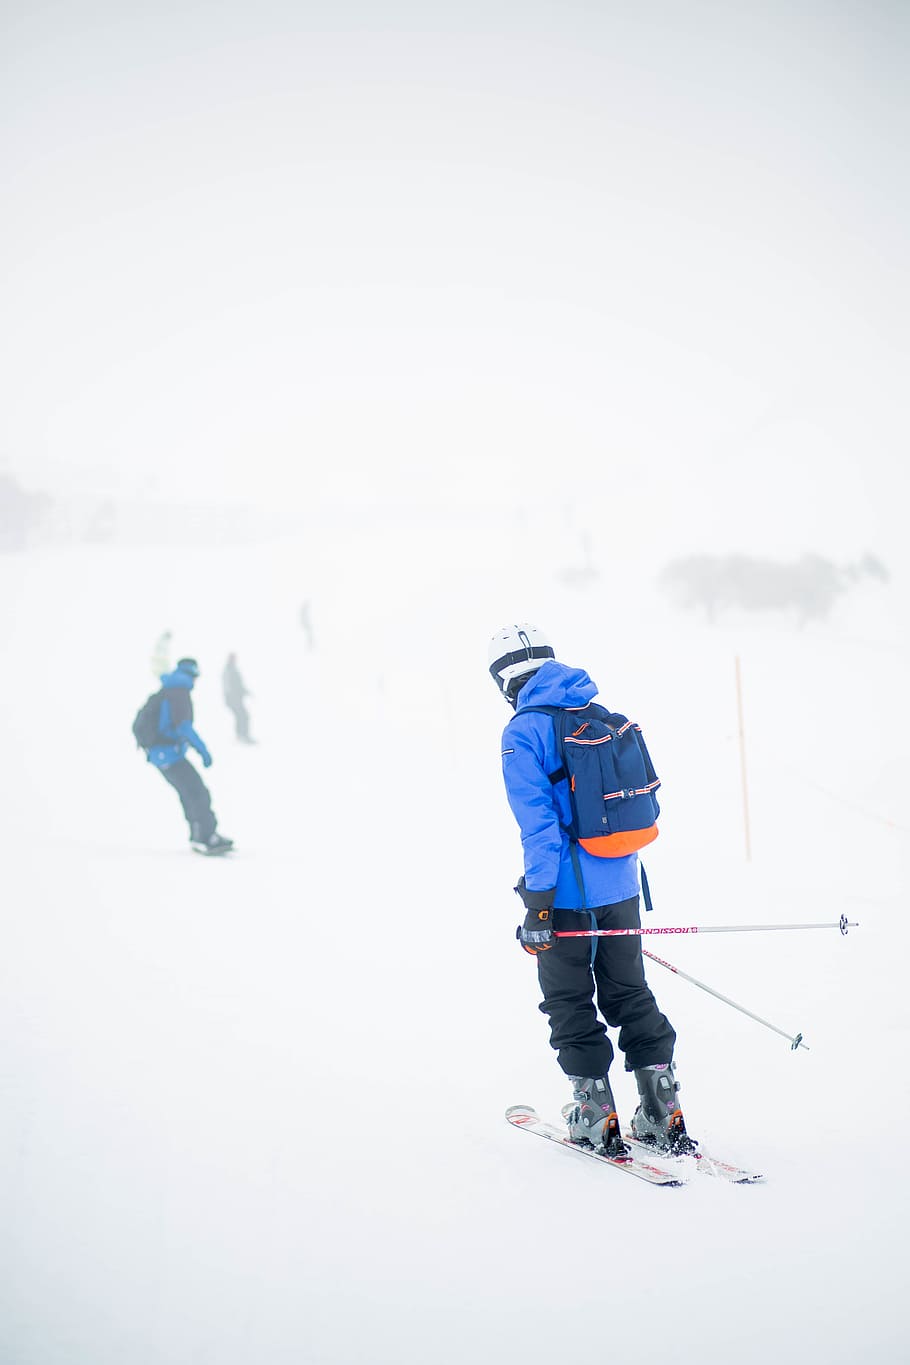 personas, hombres, iceberg, nieve, invierno, esquí, deporte, aventura, juego, temperatura fría